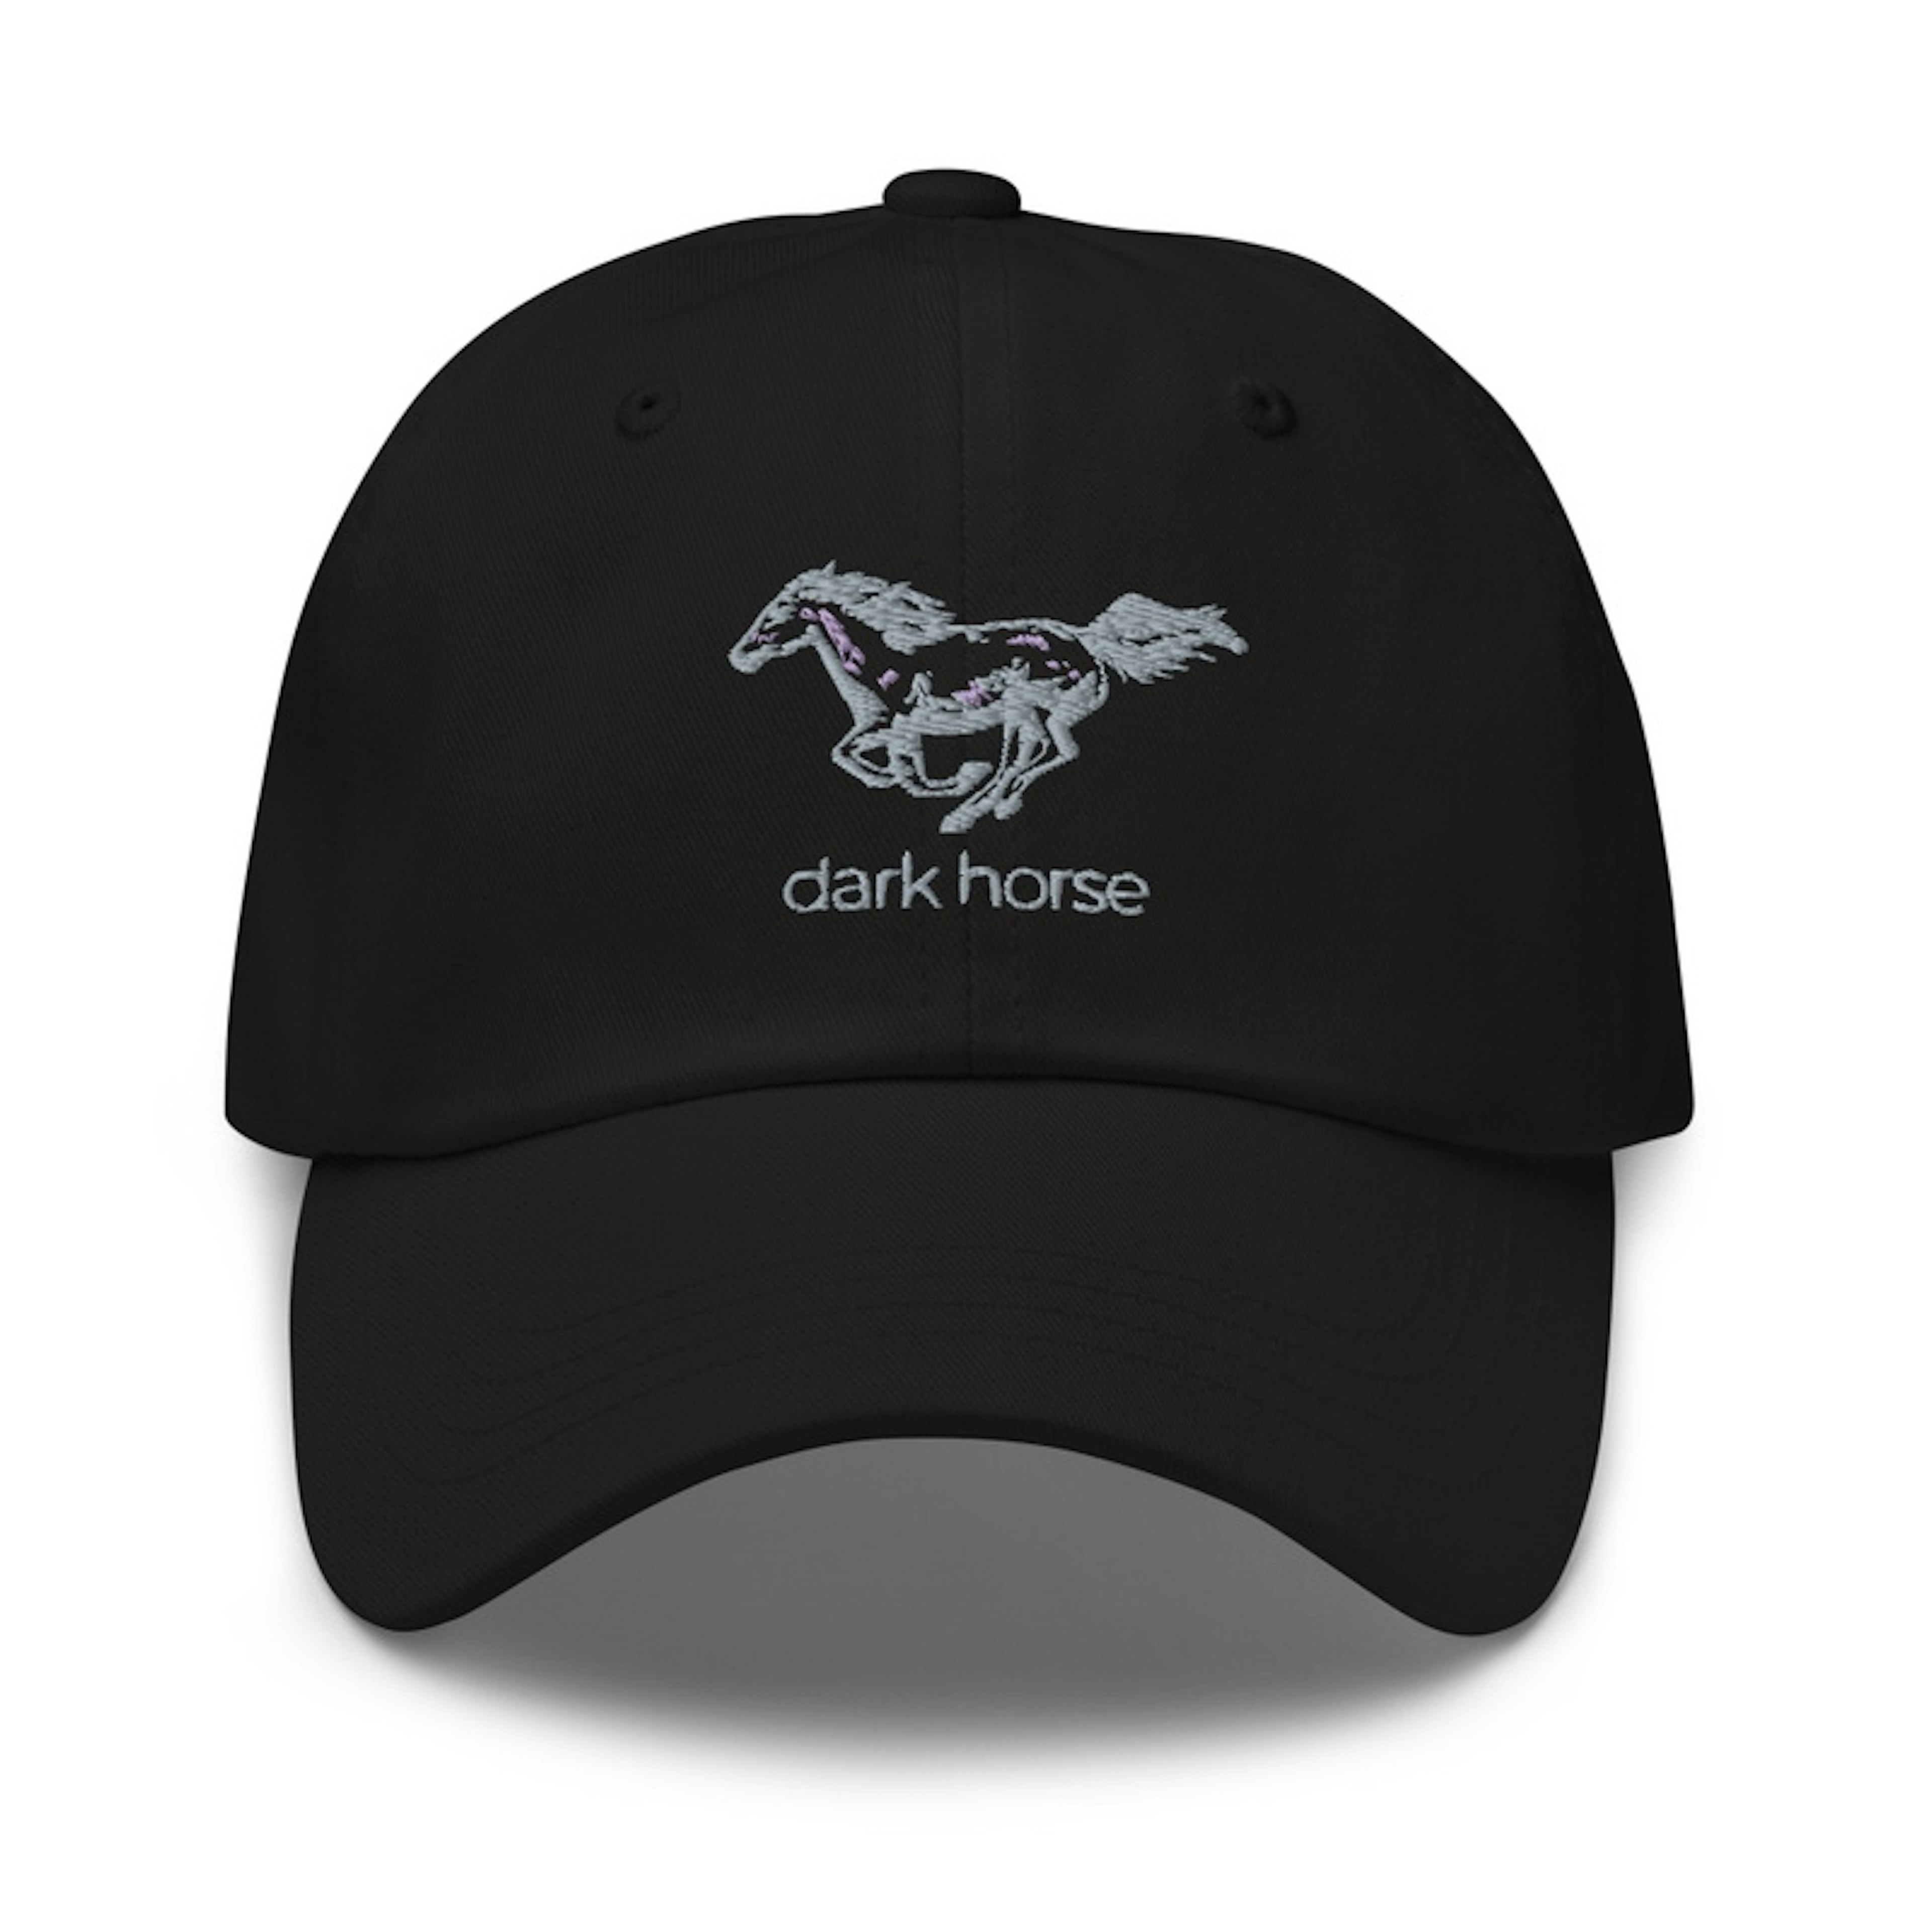 dark horse black hat 